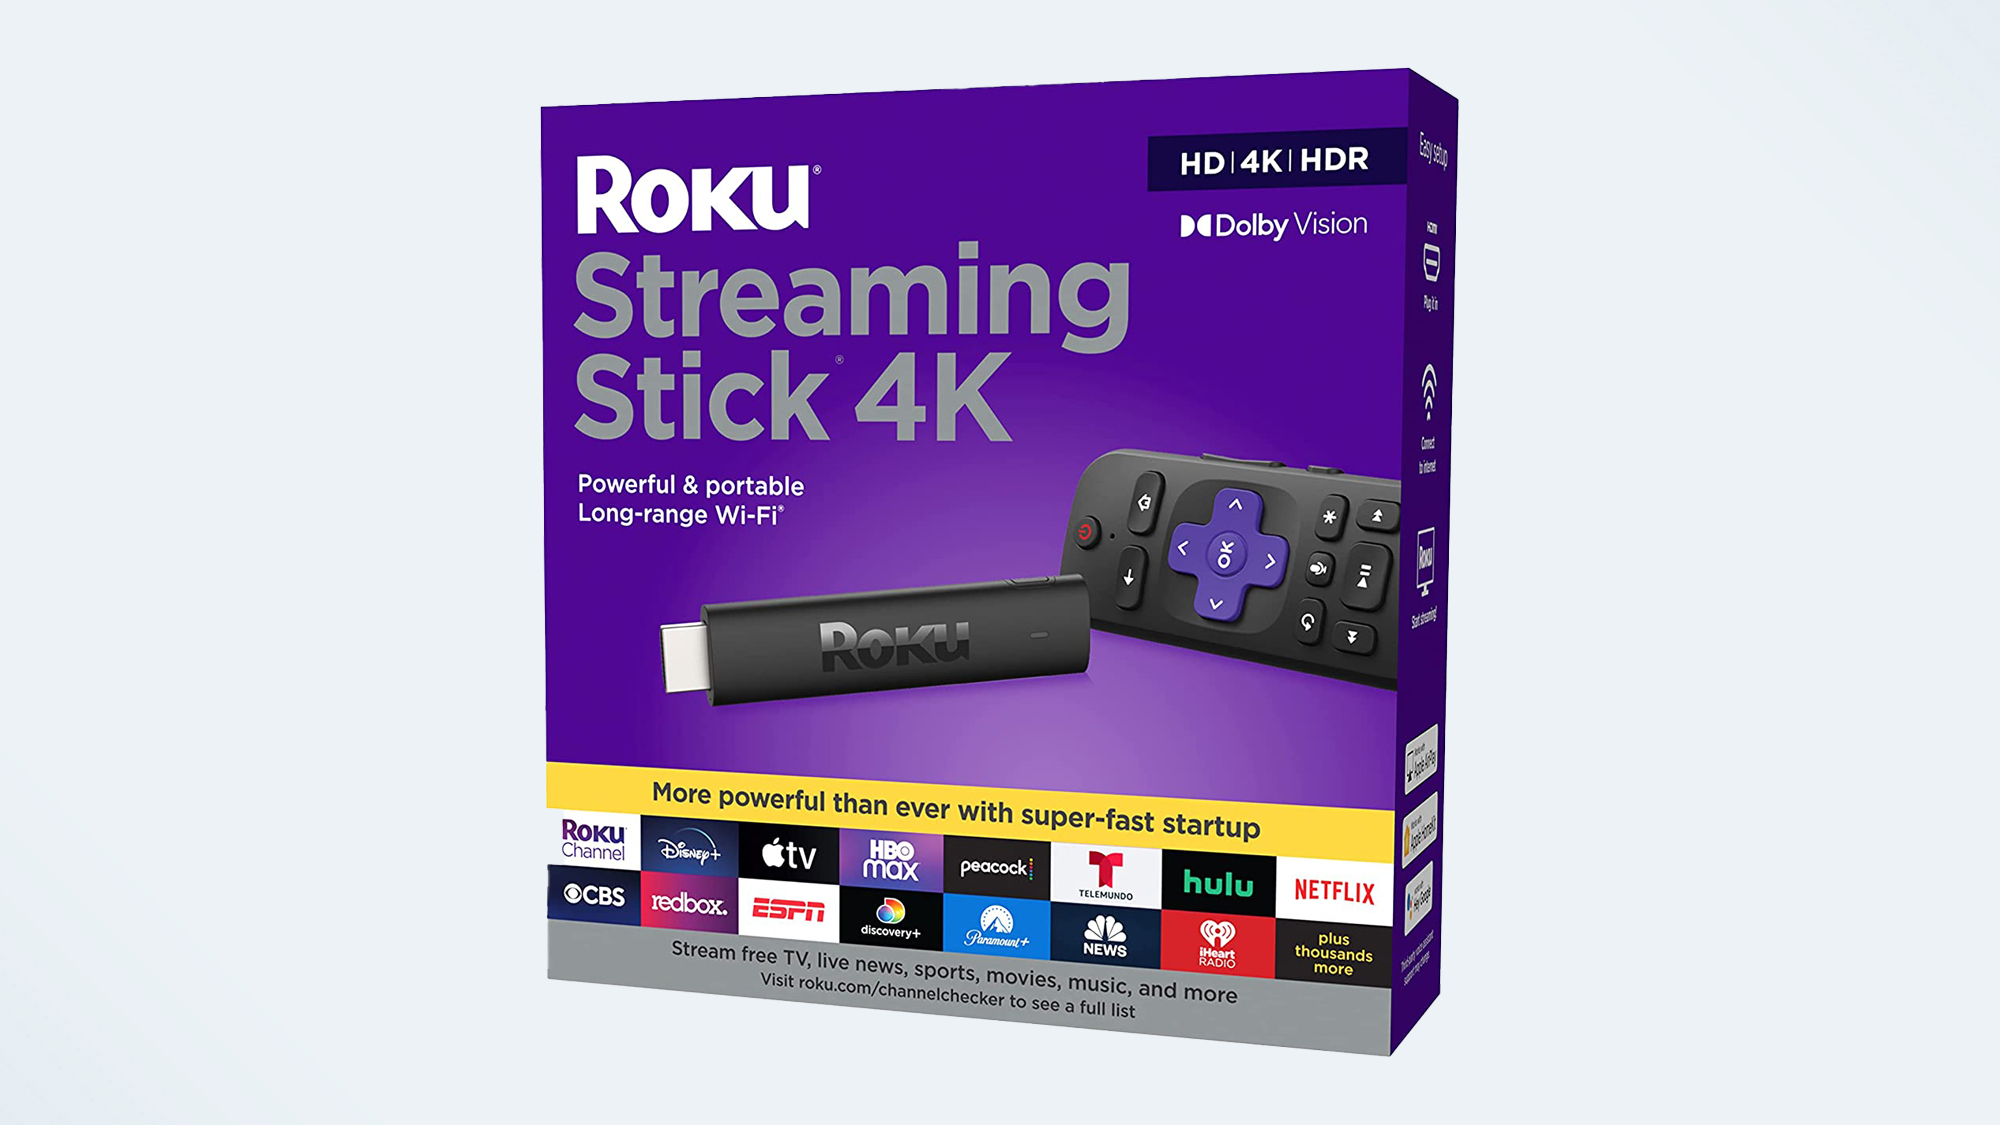 Los mejores regalos tecnológicos por menos de € 100 en 2022: Roku Streaming Stick 4K